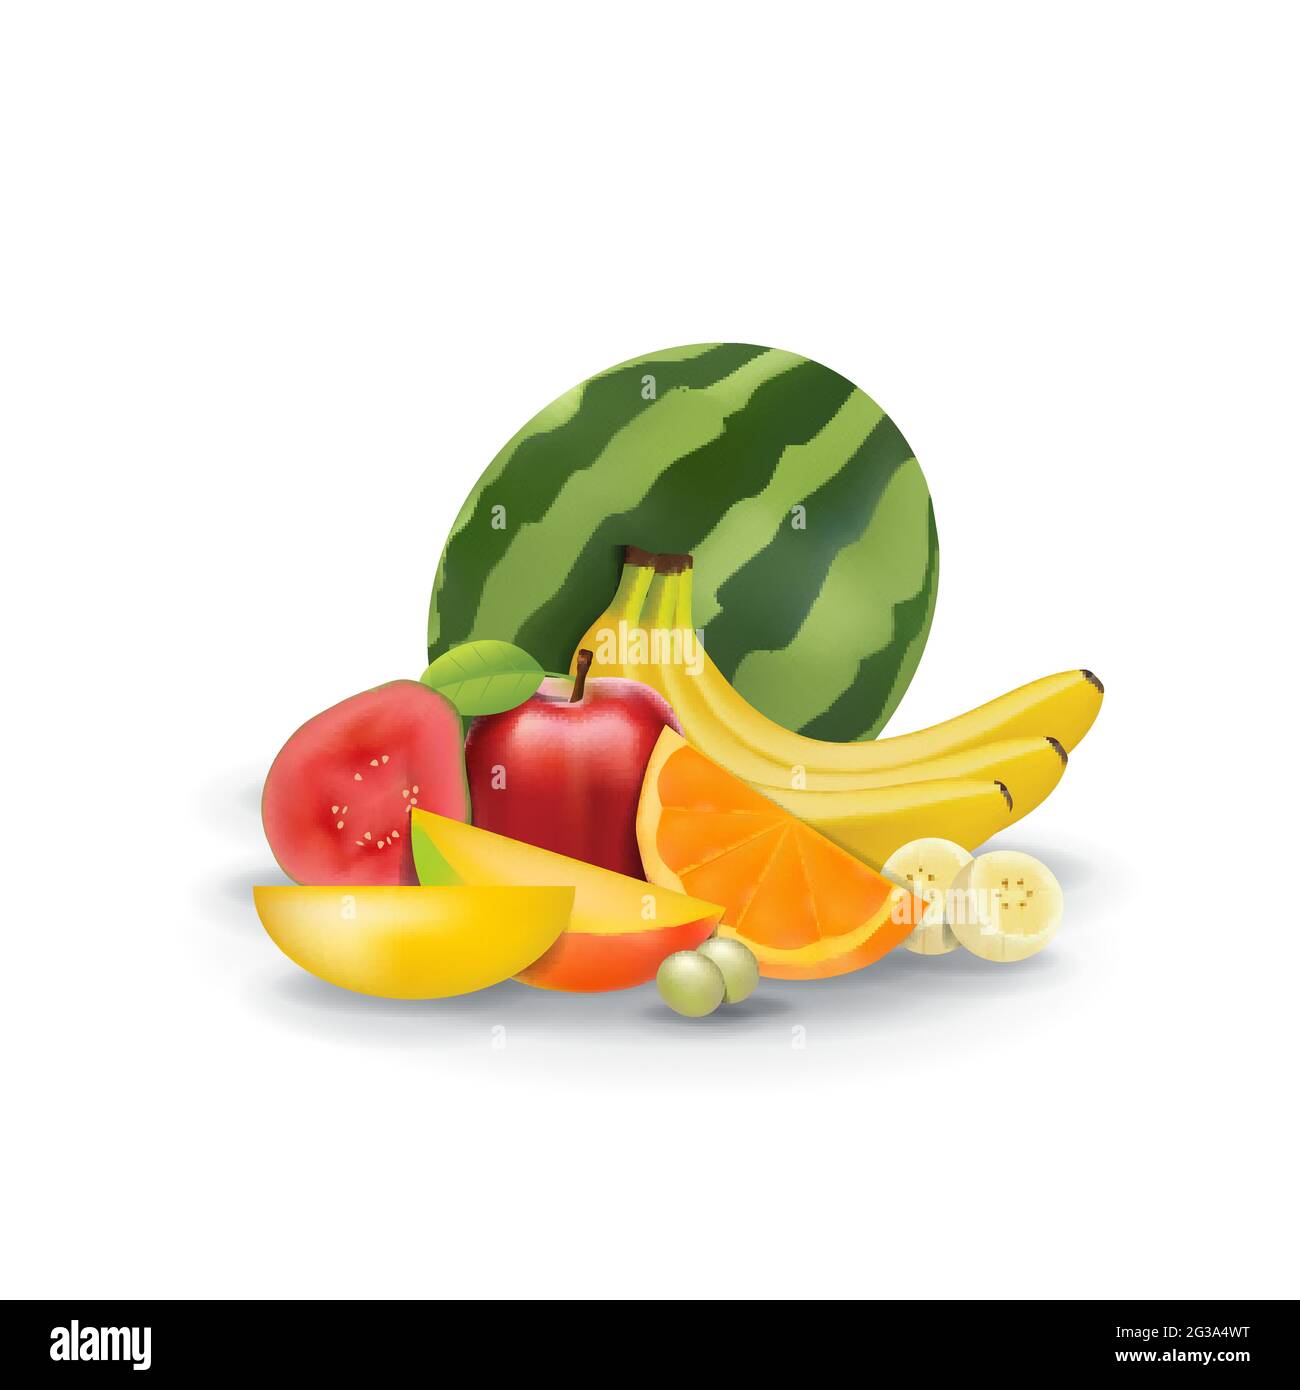 Frutta fresca naturale realistica su White Summer Isolated Vector Illustration 08 Illustrazione Vettoriale